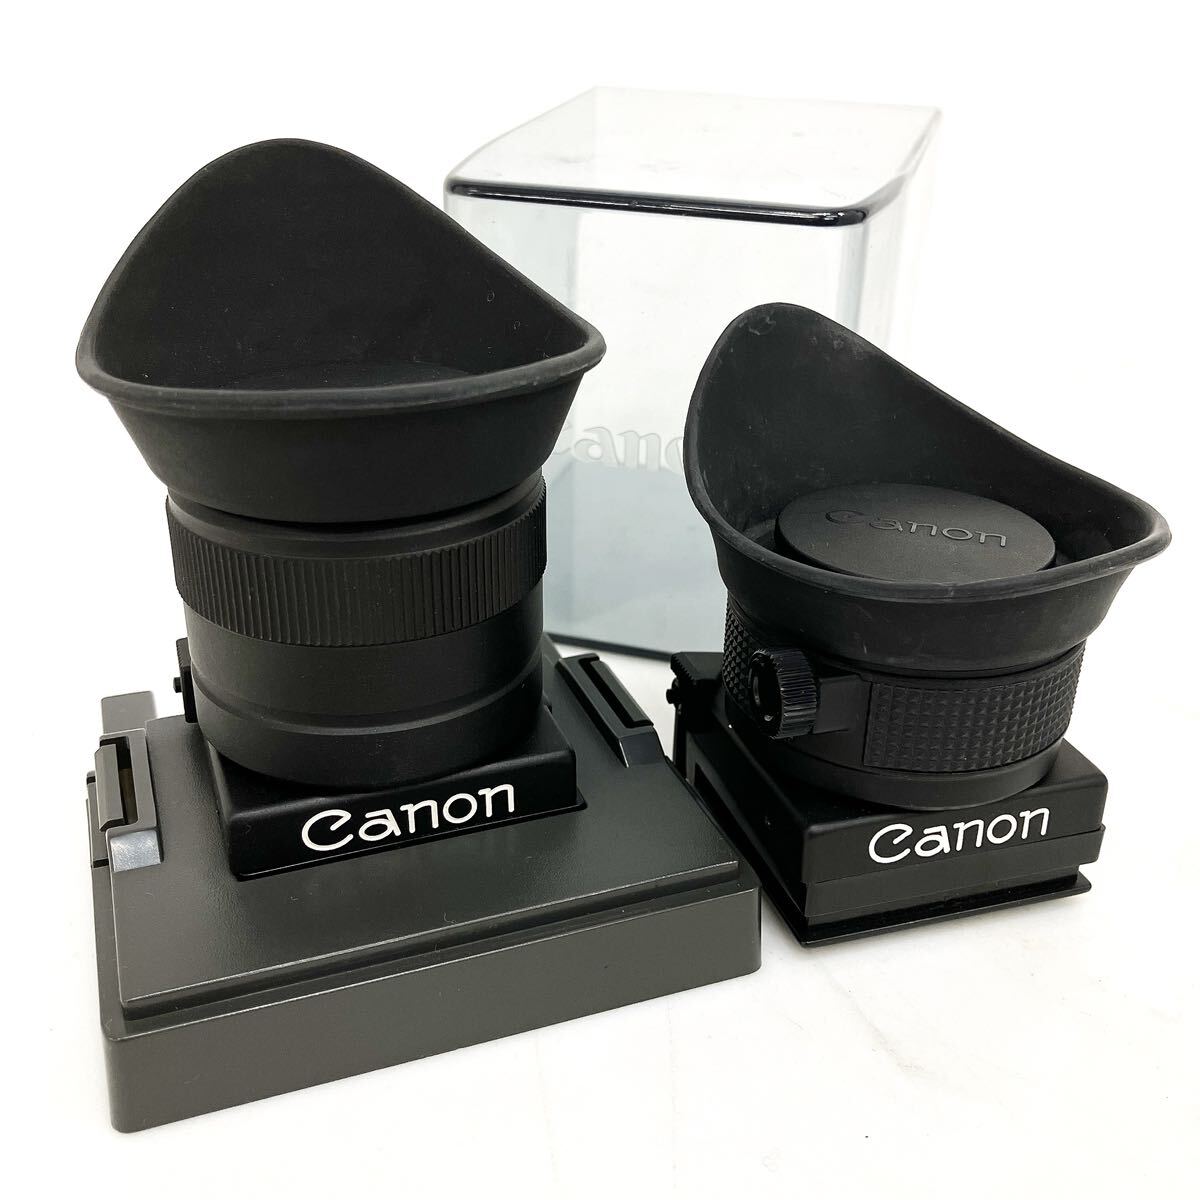 Canon キャノン WAIST LEVELFINDER FN-6X/FN 2点 カメラ 部品 パーツ ケース付き alp川0415_画像1